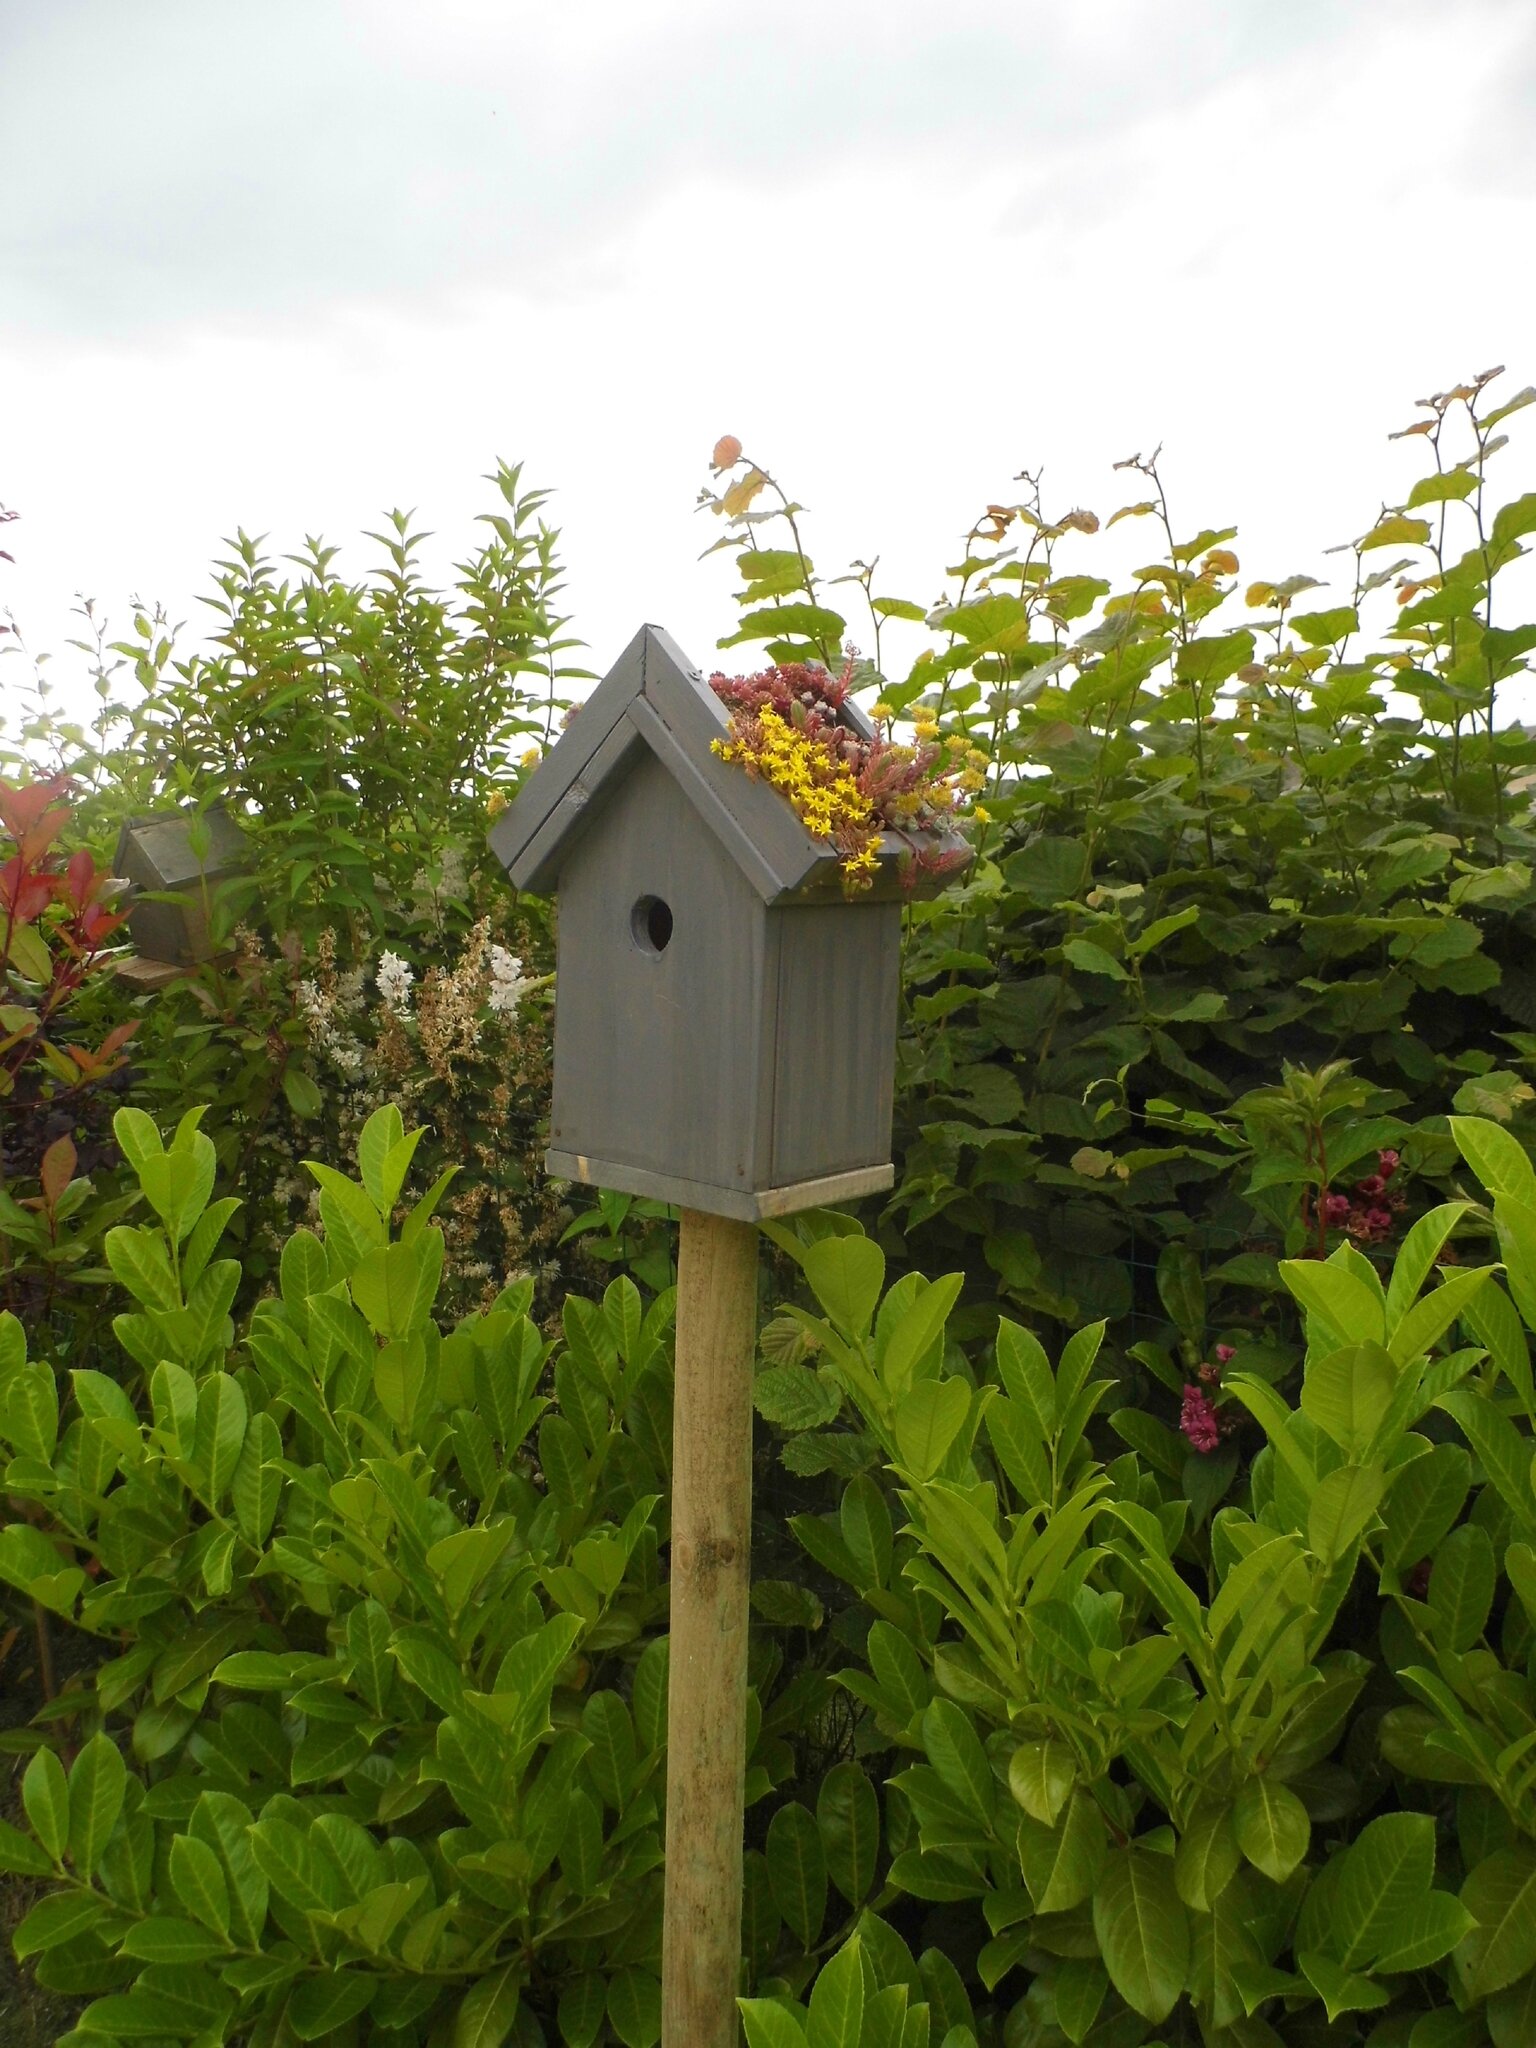 DIY jardin : fabriquer une mangeoire en bois pour les oiseaux - Marie Claire